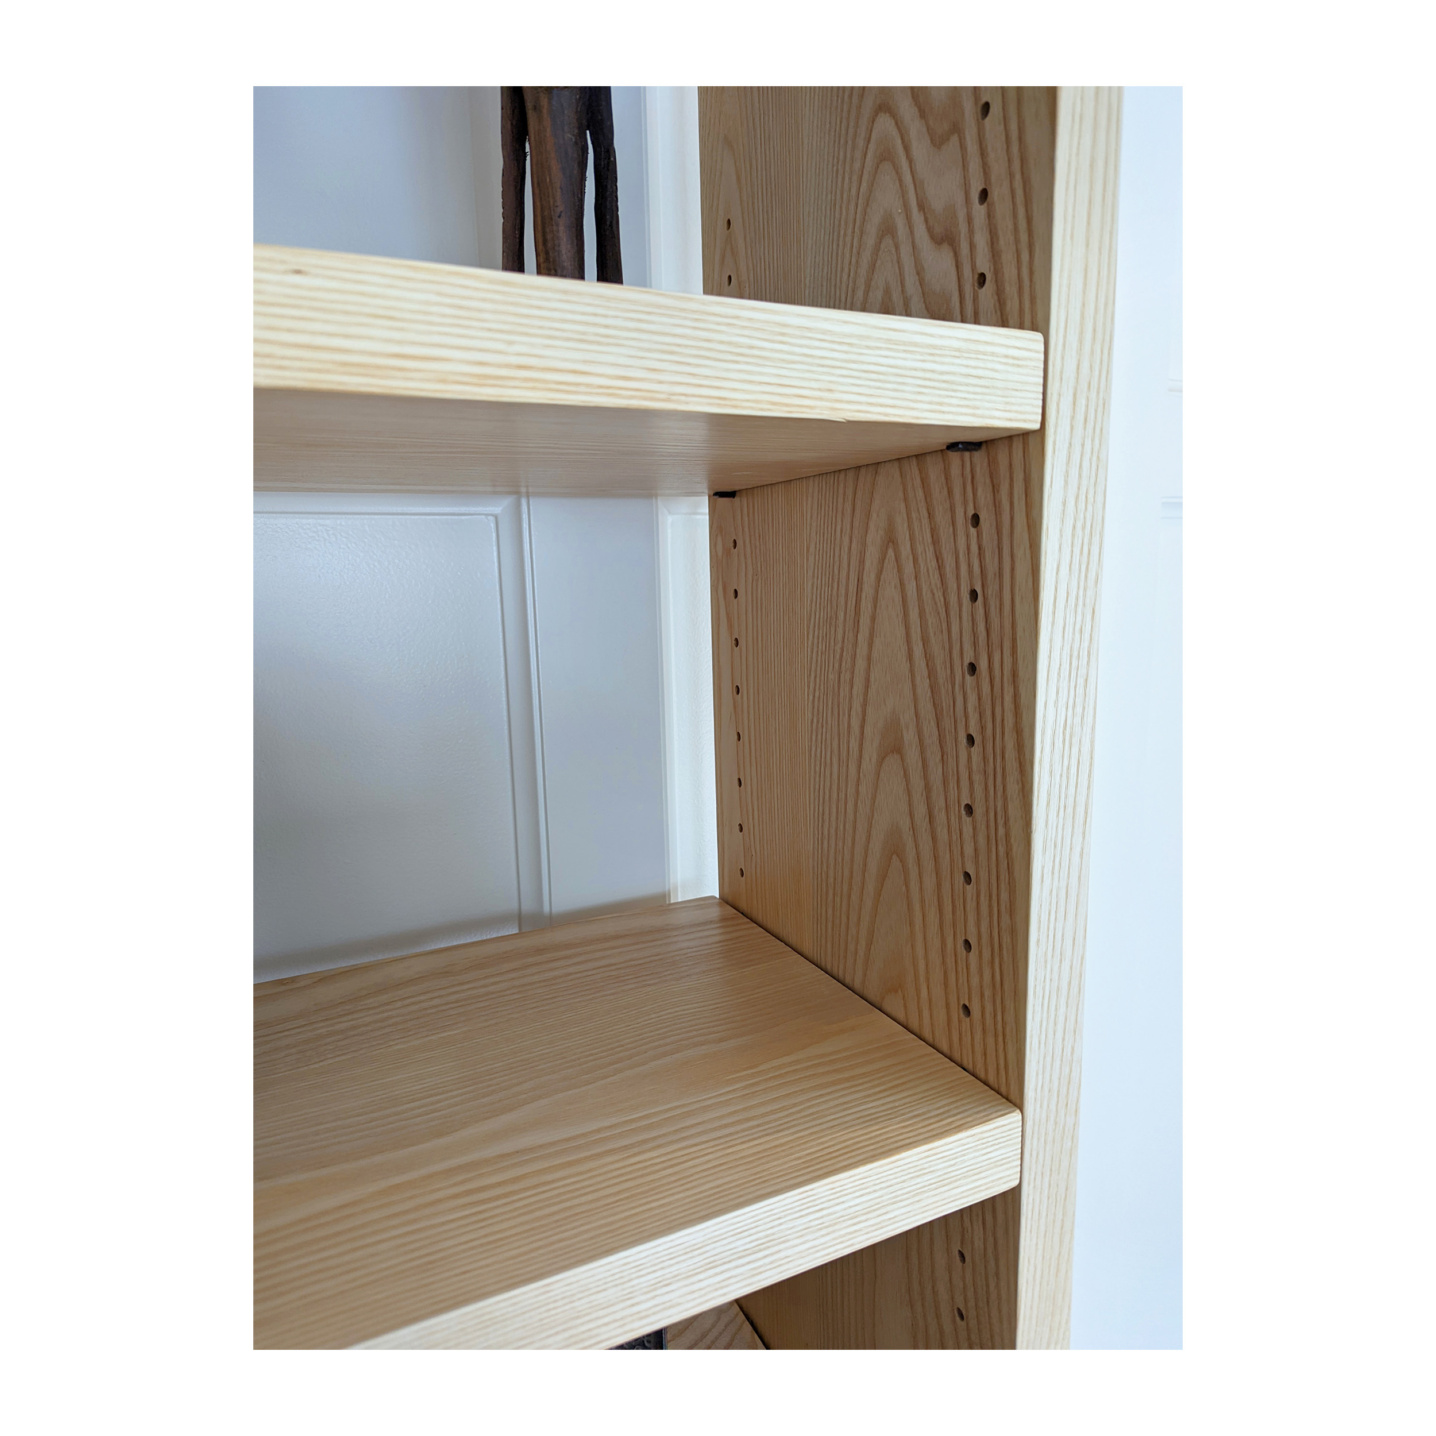 Solid wood adjustable bookcase shelves